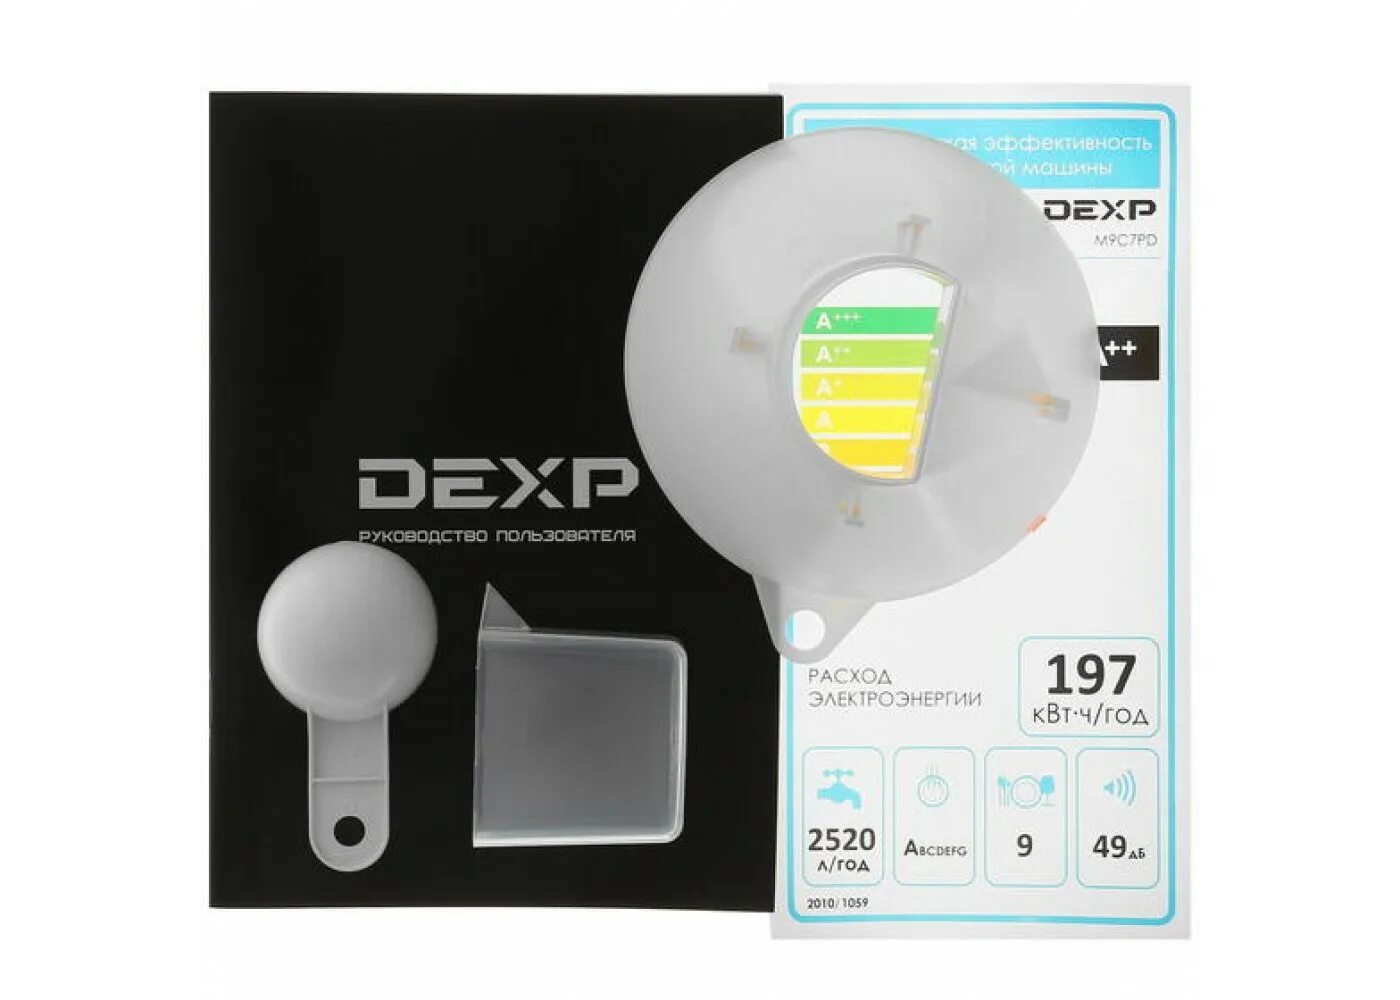 Посудомоечная машина dexp m9c7pd. Посудомоечная машина DEXP m9c7pd белый. Посудомоечная машина DEXP m9c7pd инструкция. Программы посудомоечной машины DEXP. Посудомоечная машина DEXP m9c7pd потекла.